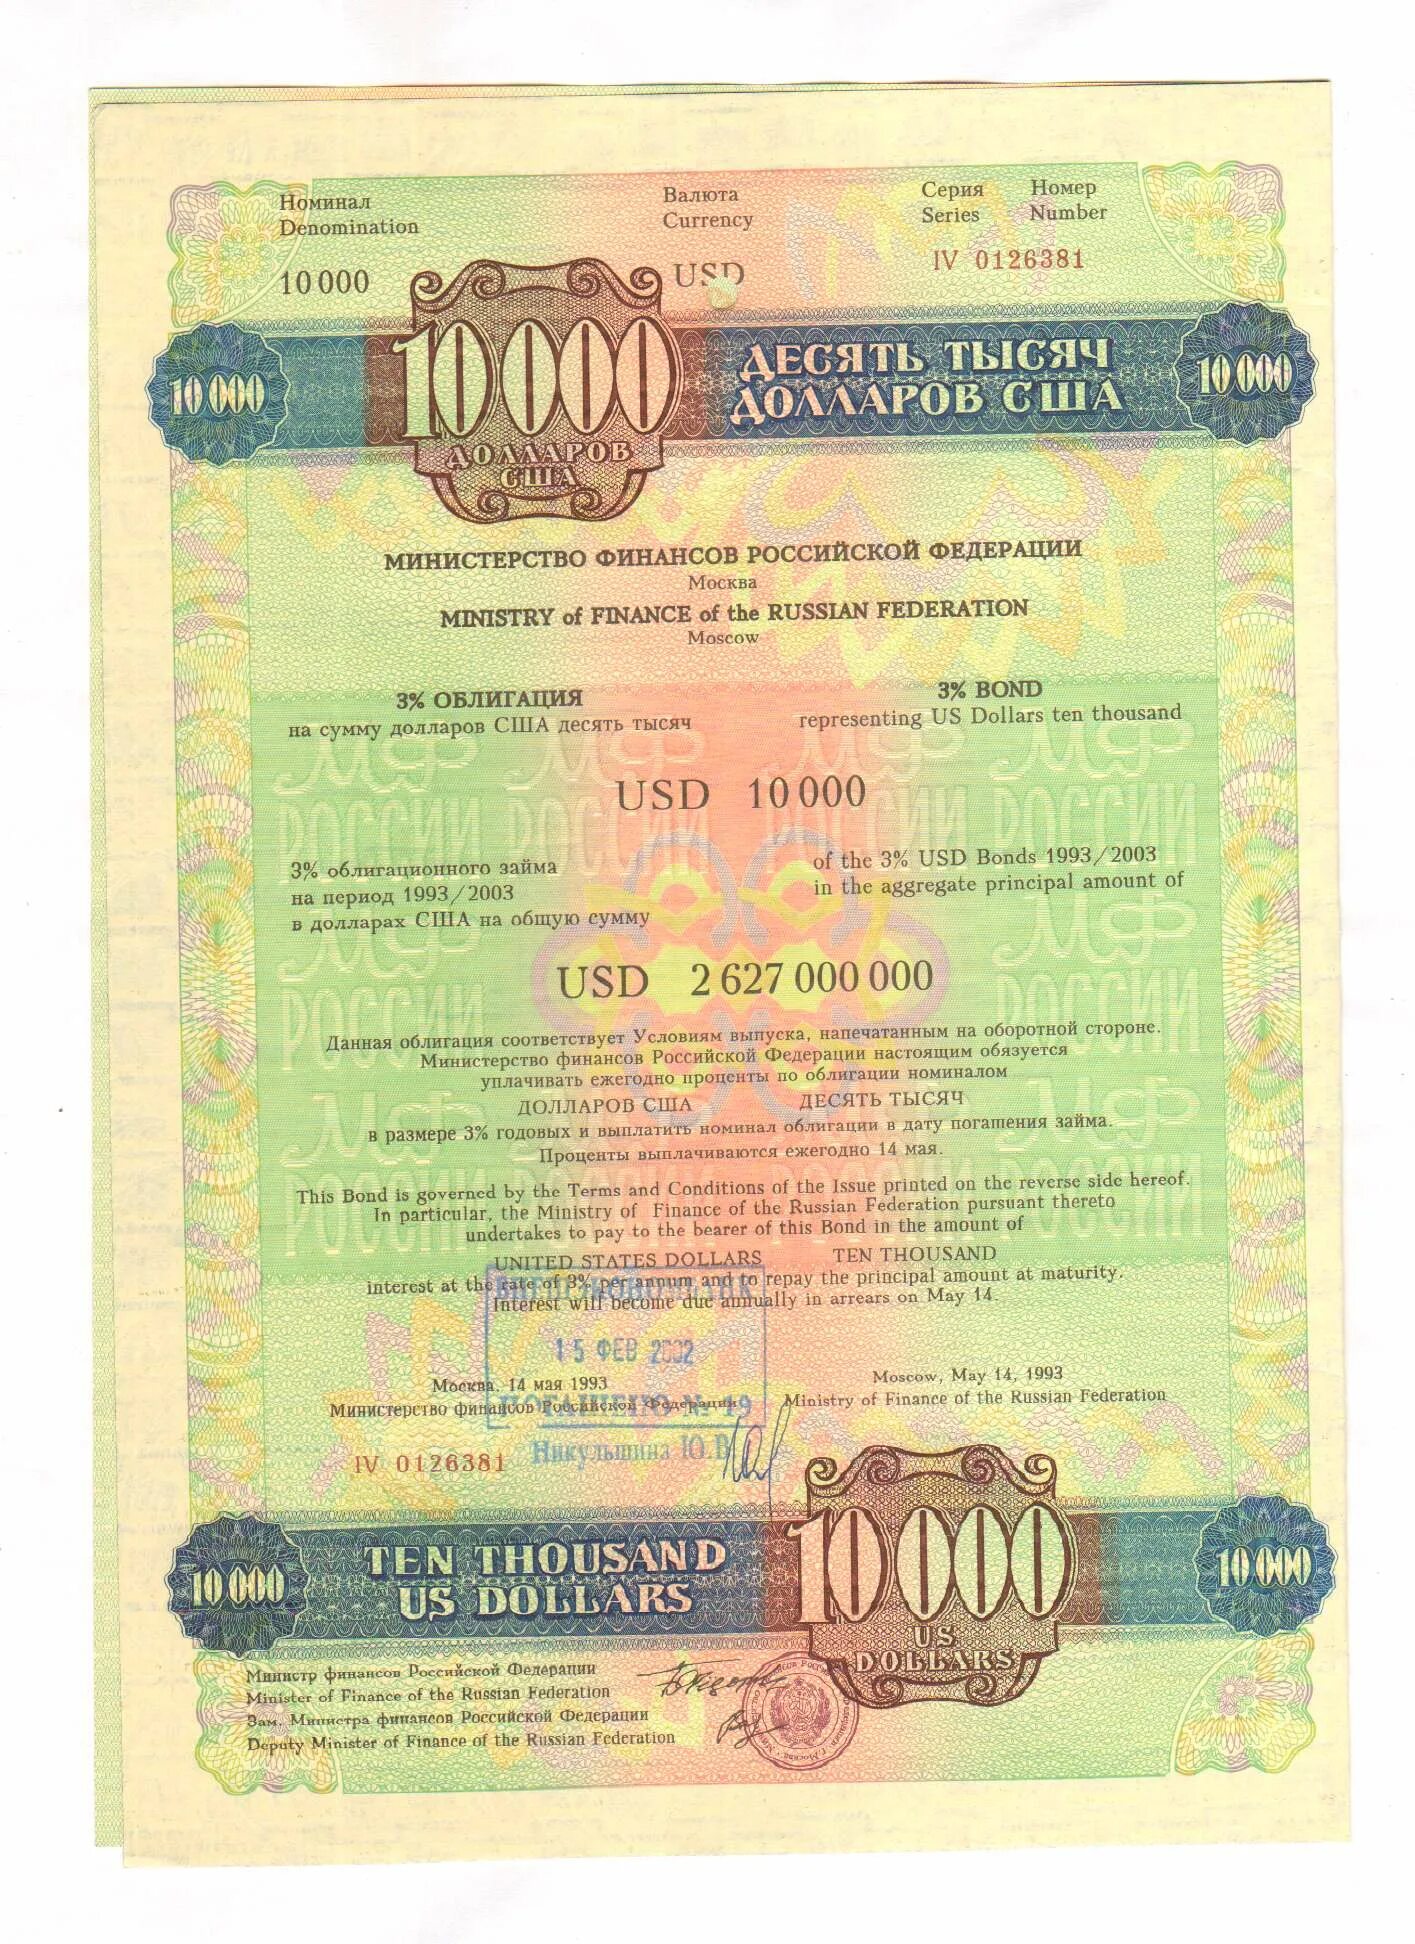 Долларовые облигации. Облигация 10000. Облигации внутреннего государственного валютного займа. Ценные бумаги 1993.